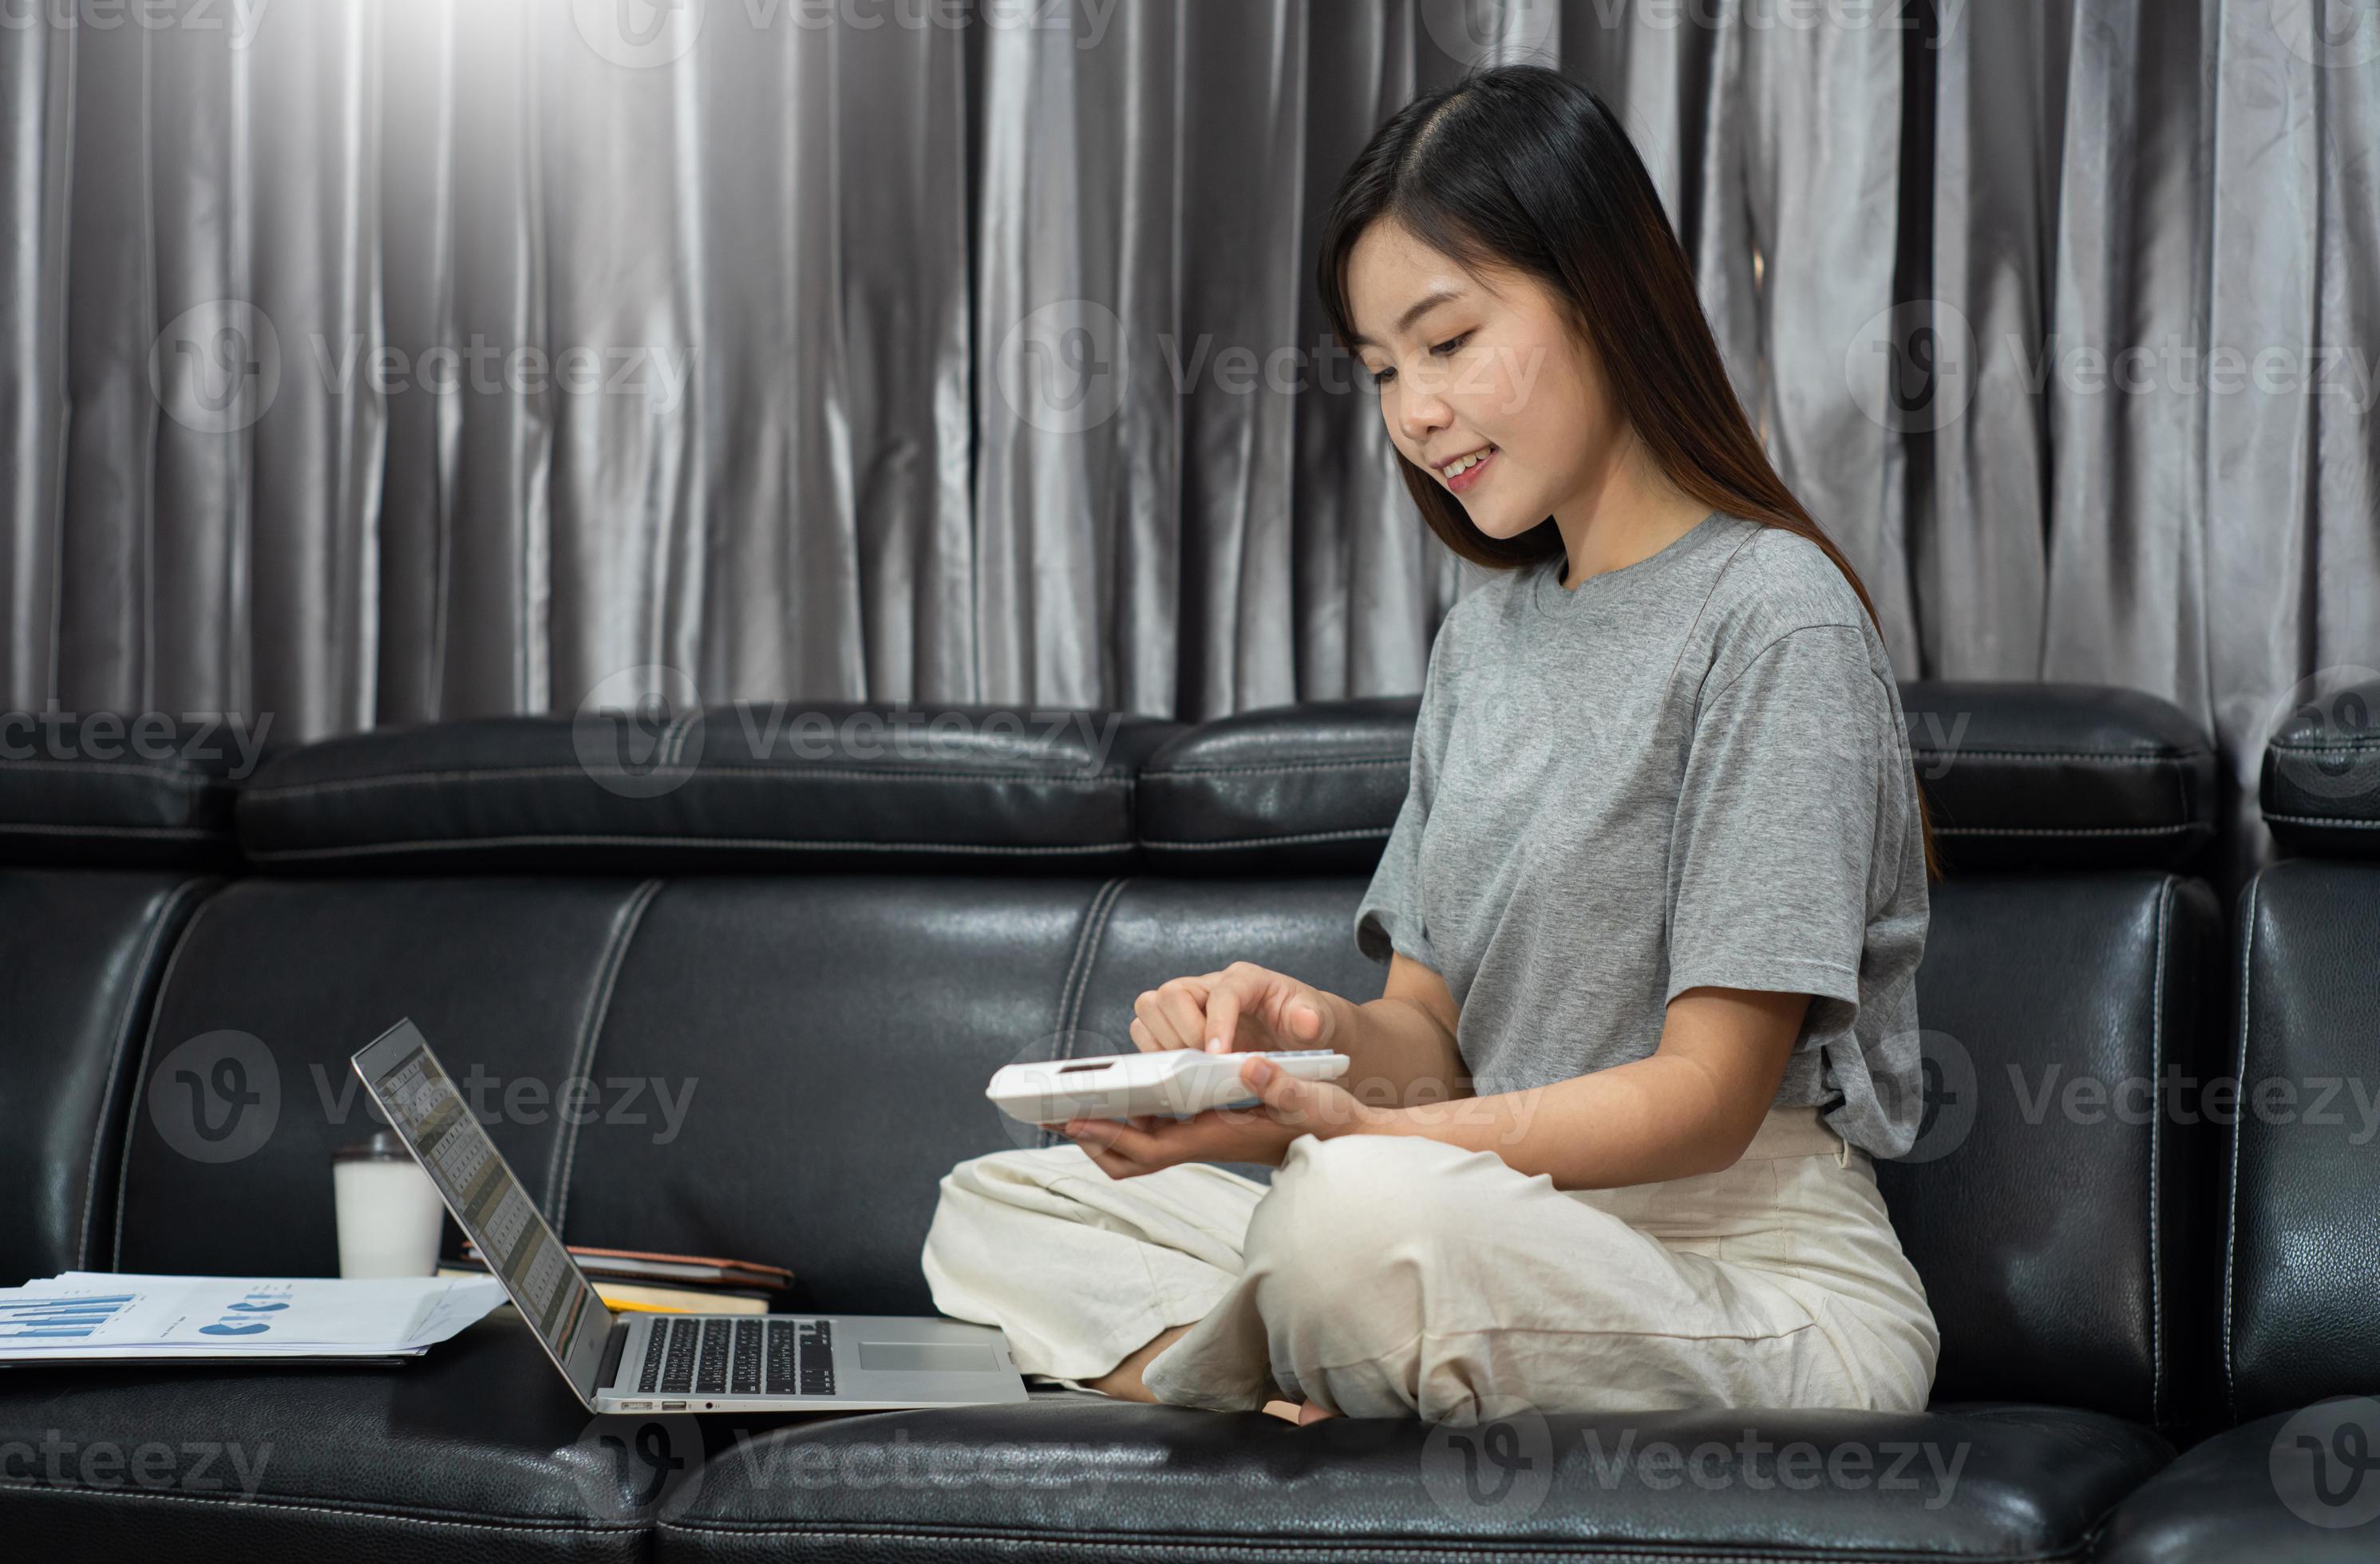 Attraktive junge schöne asiatische Frau, die mit Laptop und Dokument arbeitet, während sie als Freiberuflerin im Wohnzimmerbüro im Innenbereich sitzt, E-Coaching-Arbeit, Fernarbeit oder Arbeit von zu Hause aus. foto